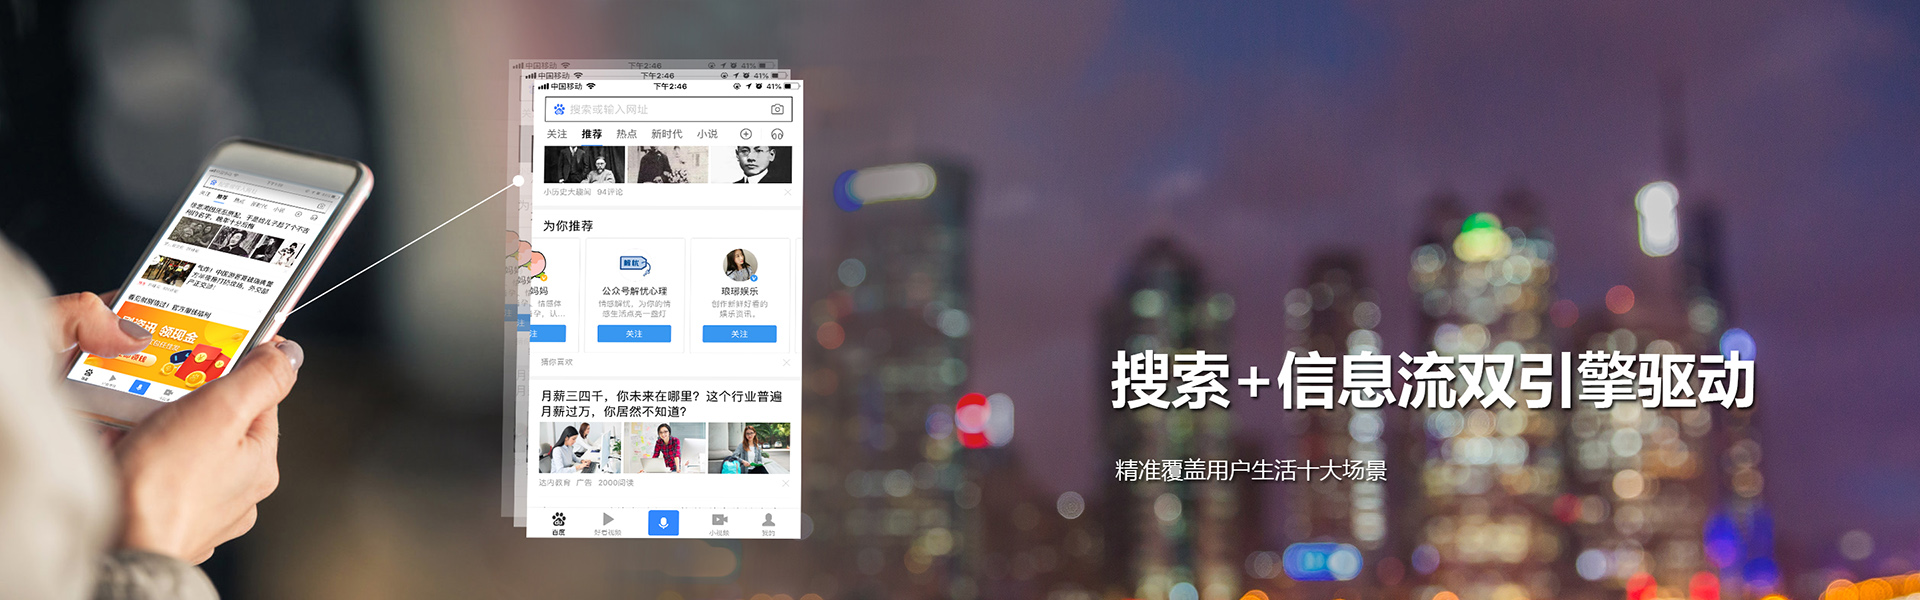 南京百度推广搜索+信息流双引擎驱动精准覆盖用户需求服务